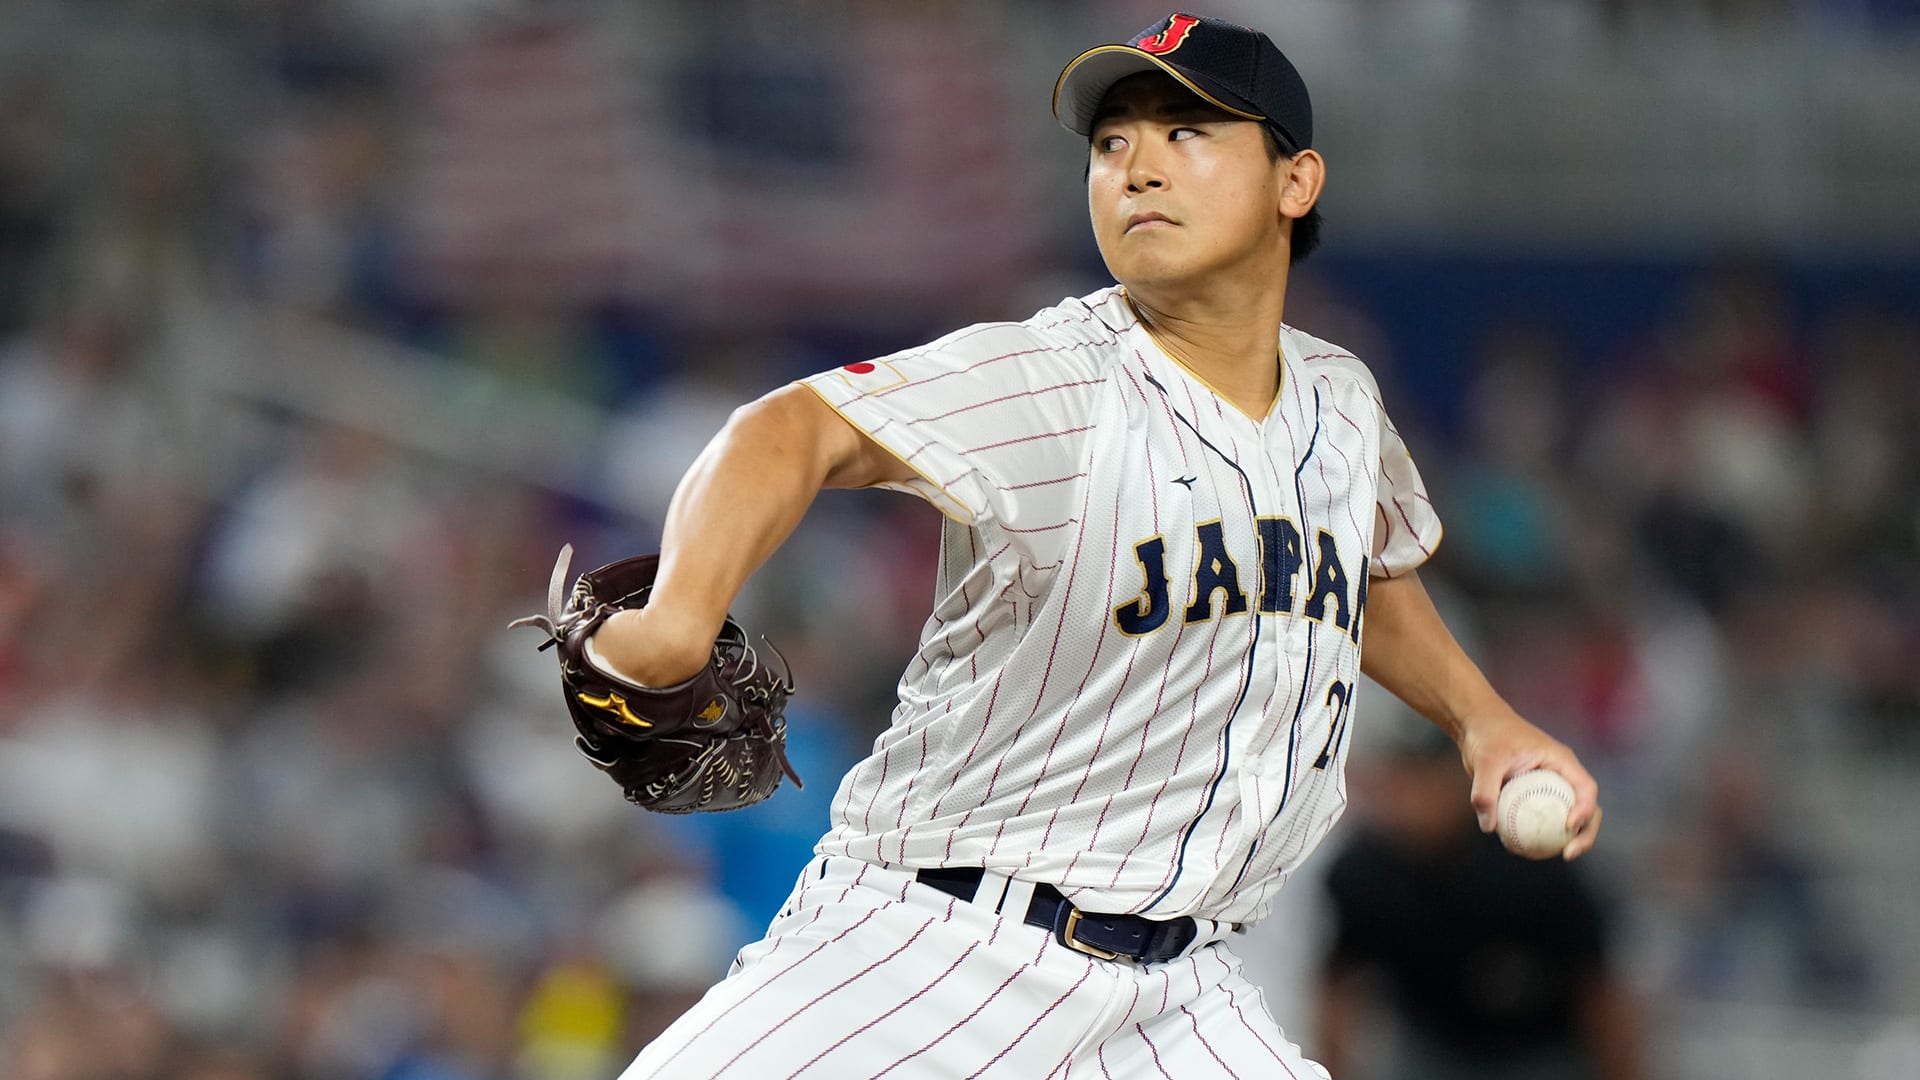 Shōta Imanaga delivers a pitch